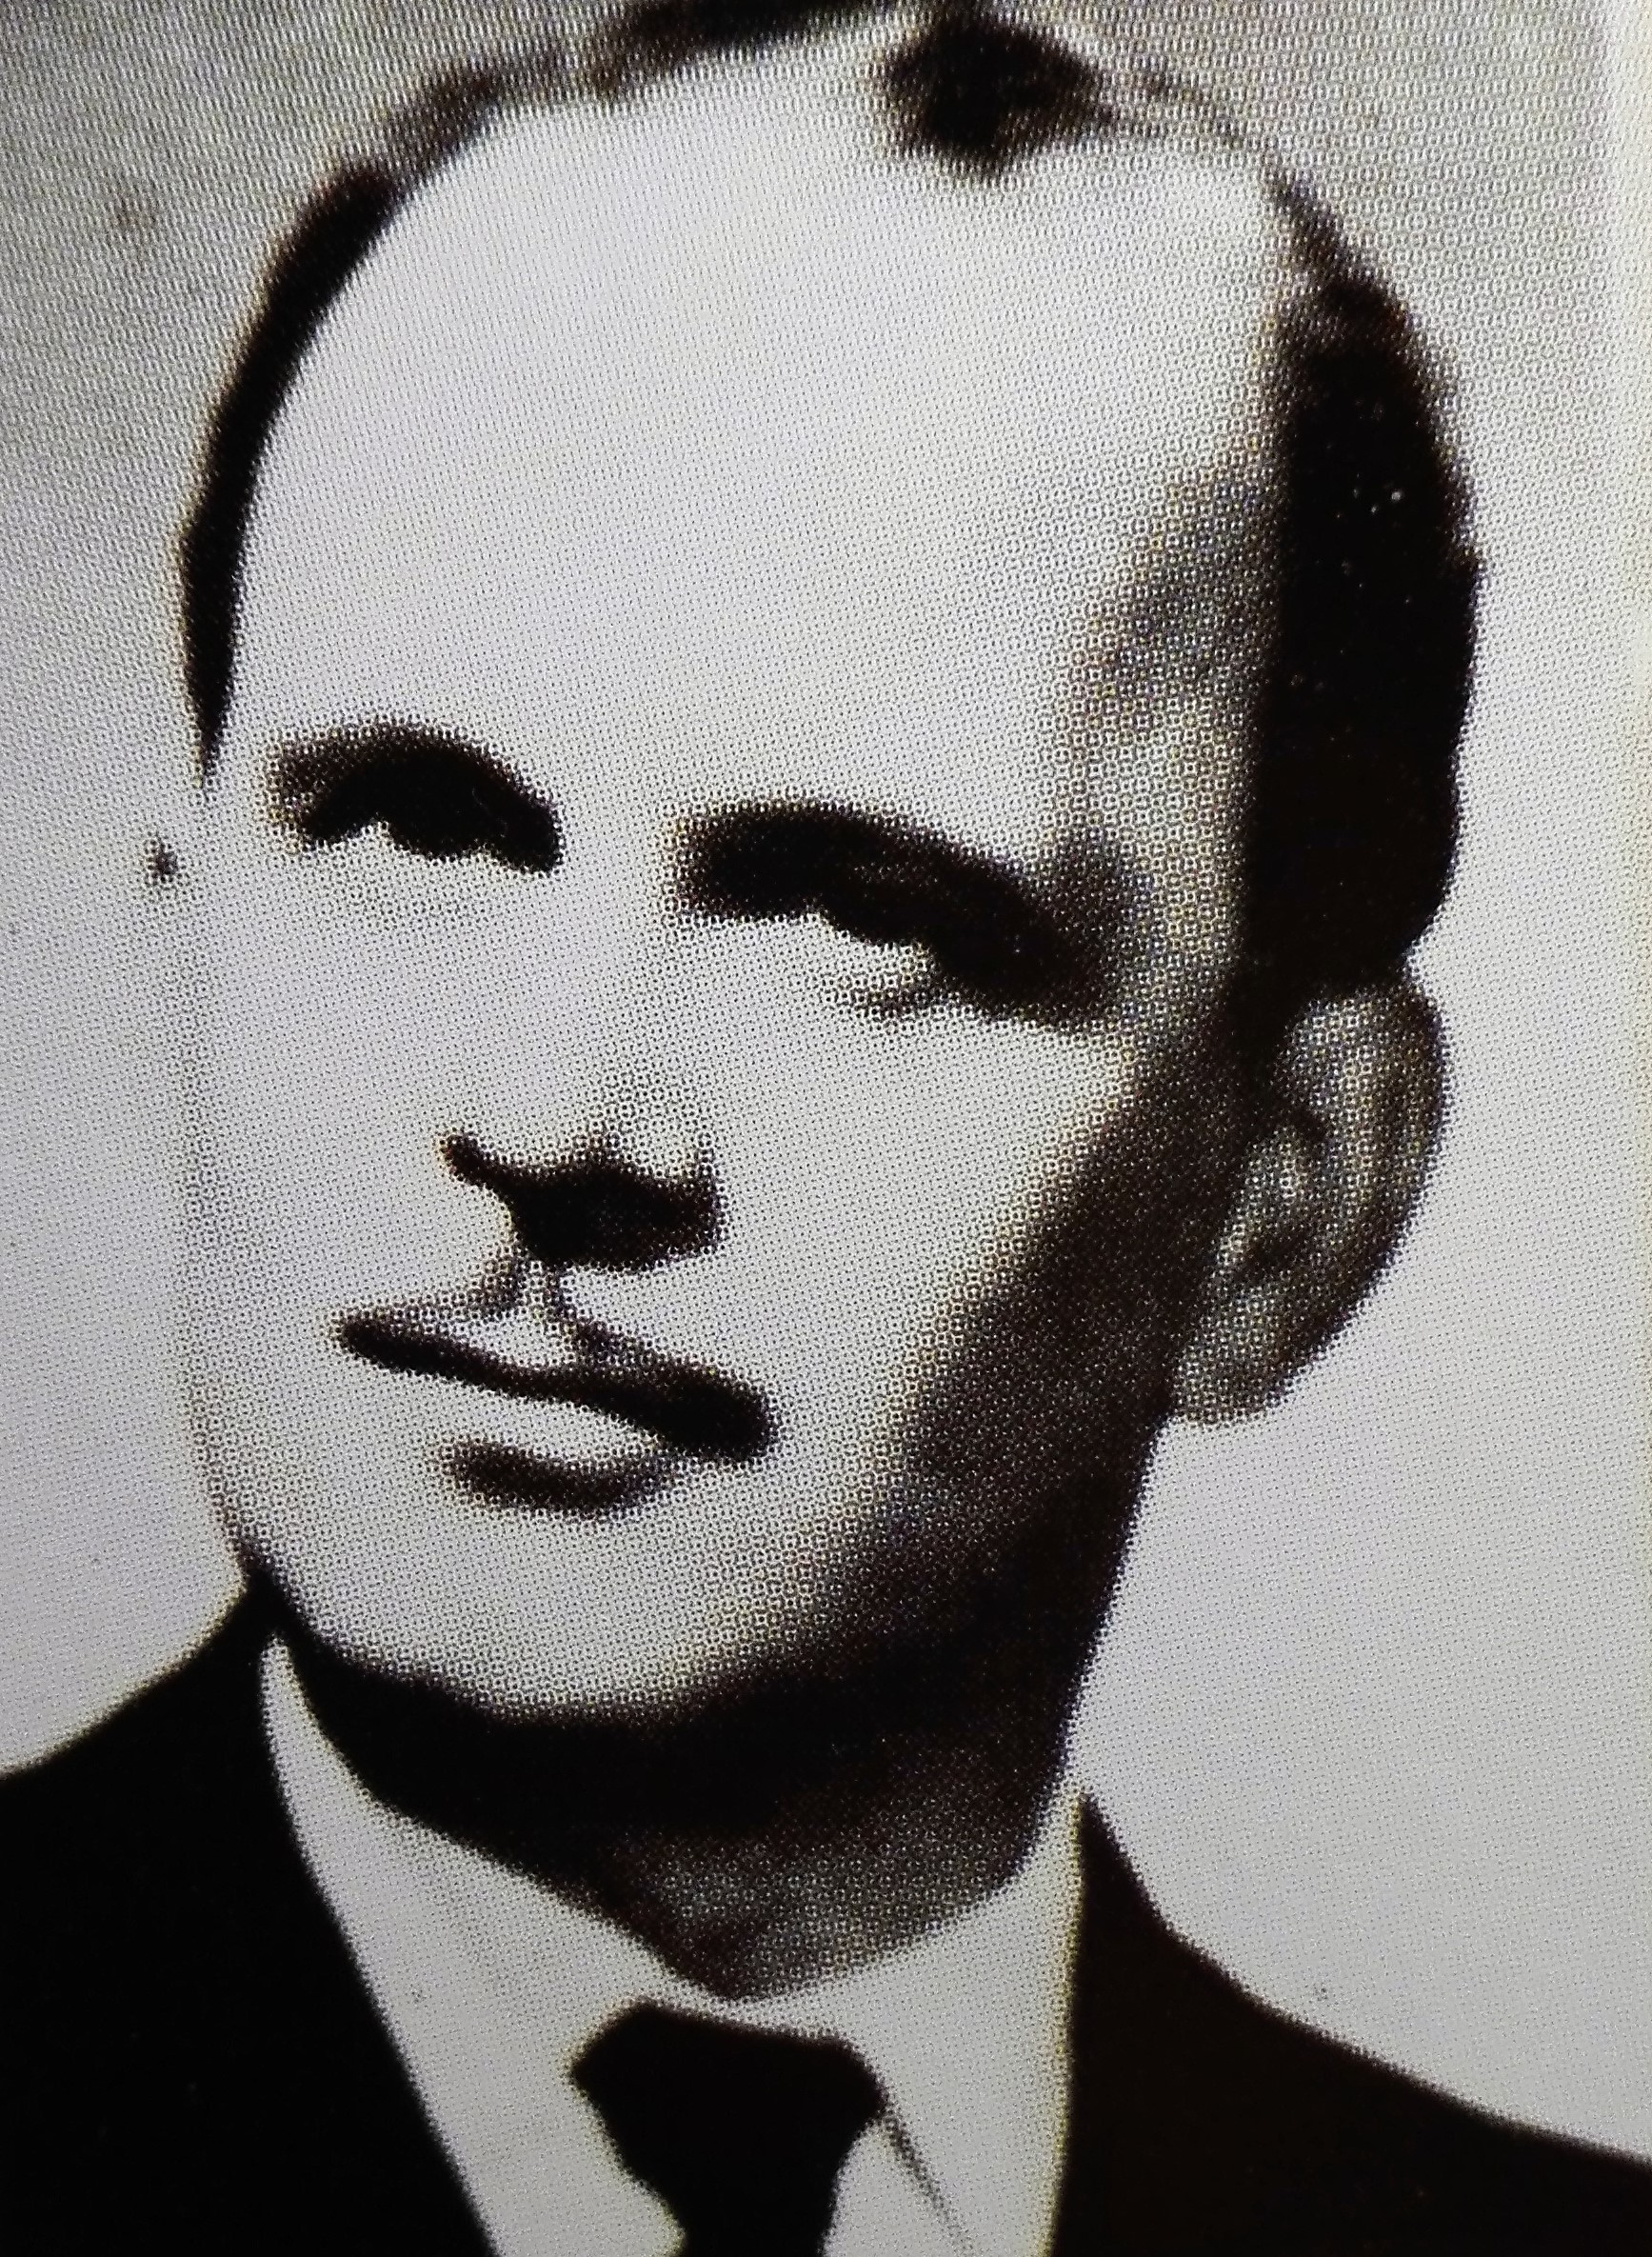 József Fodor in 1970